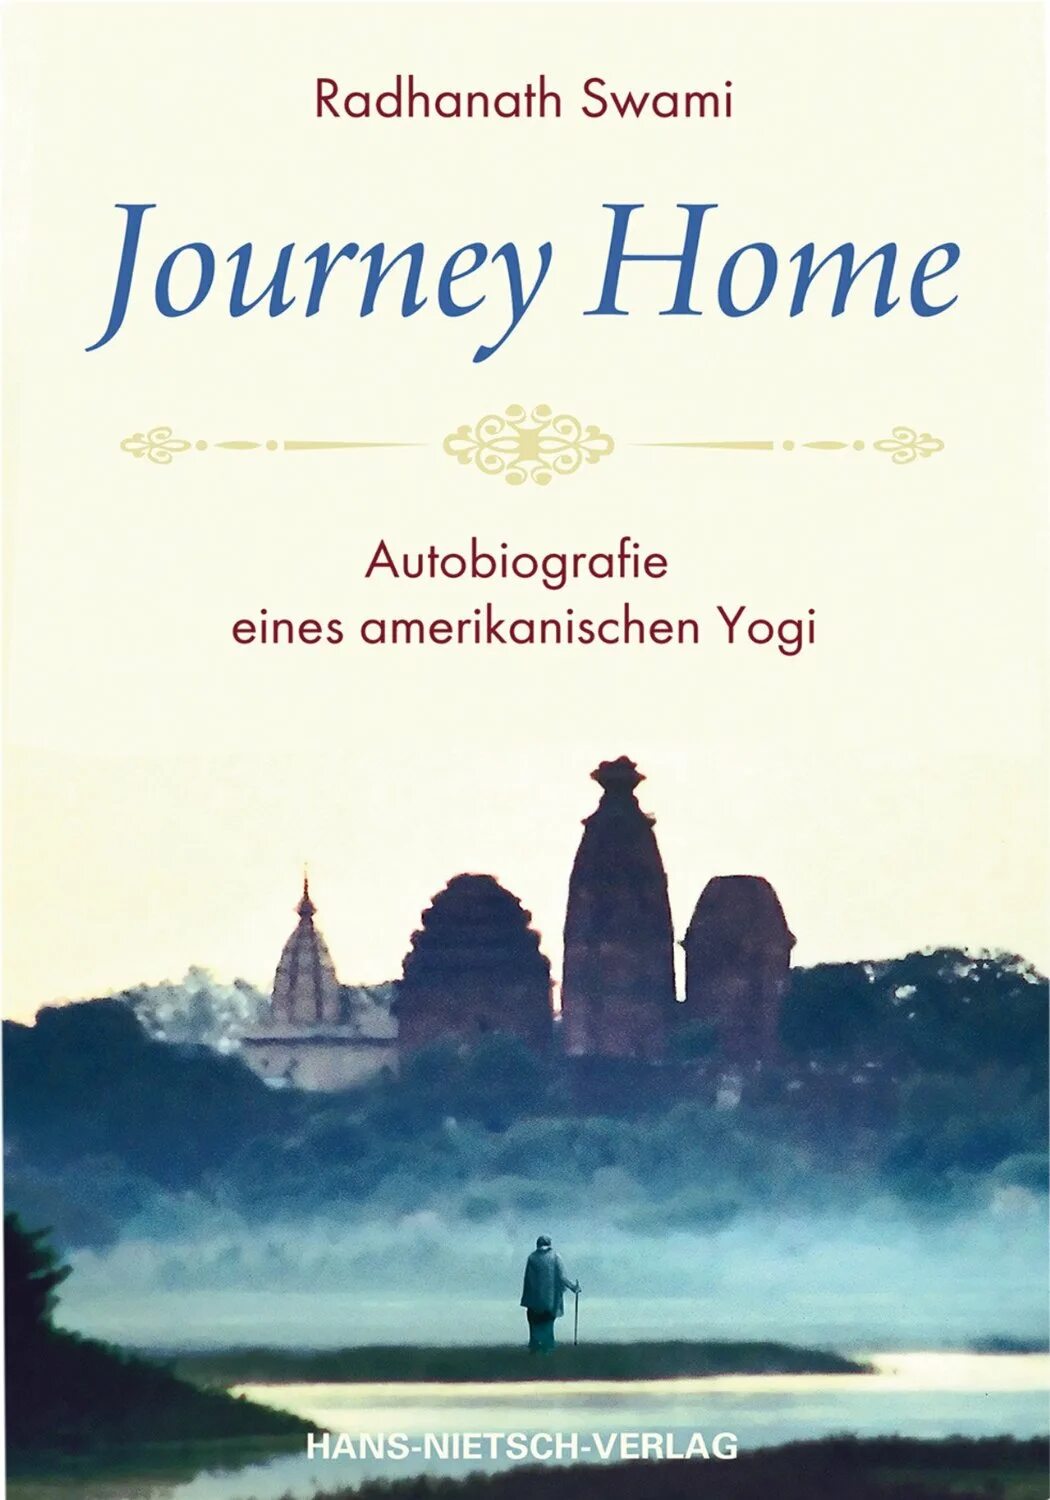 Путешествие домой радханатха. Путешествие домой автобиография американского йога Радханатха Свами. The Journey Home. Journey Home svami. Путь домой книга Радханатха.